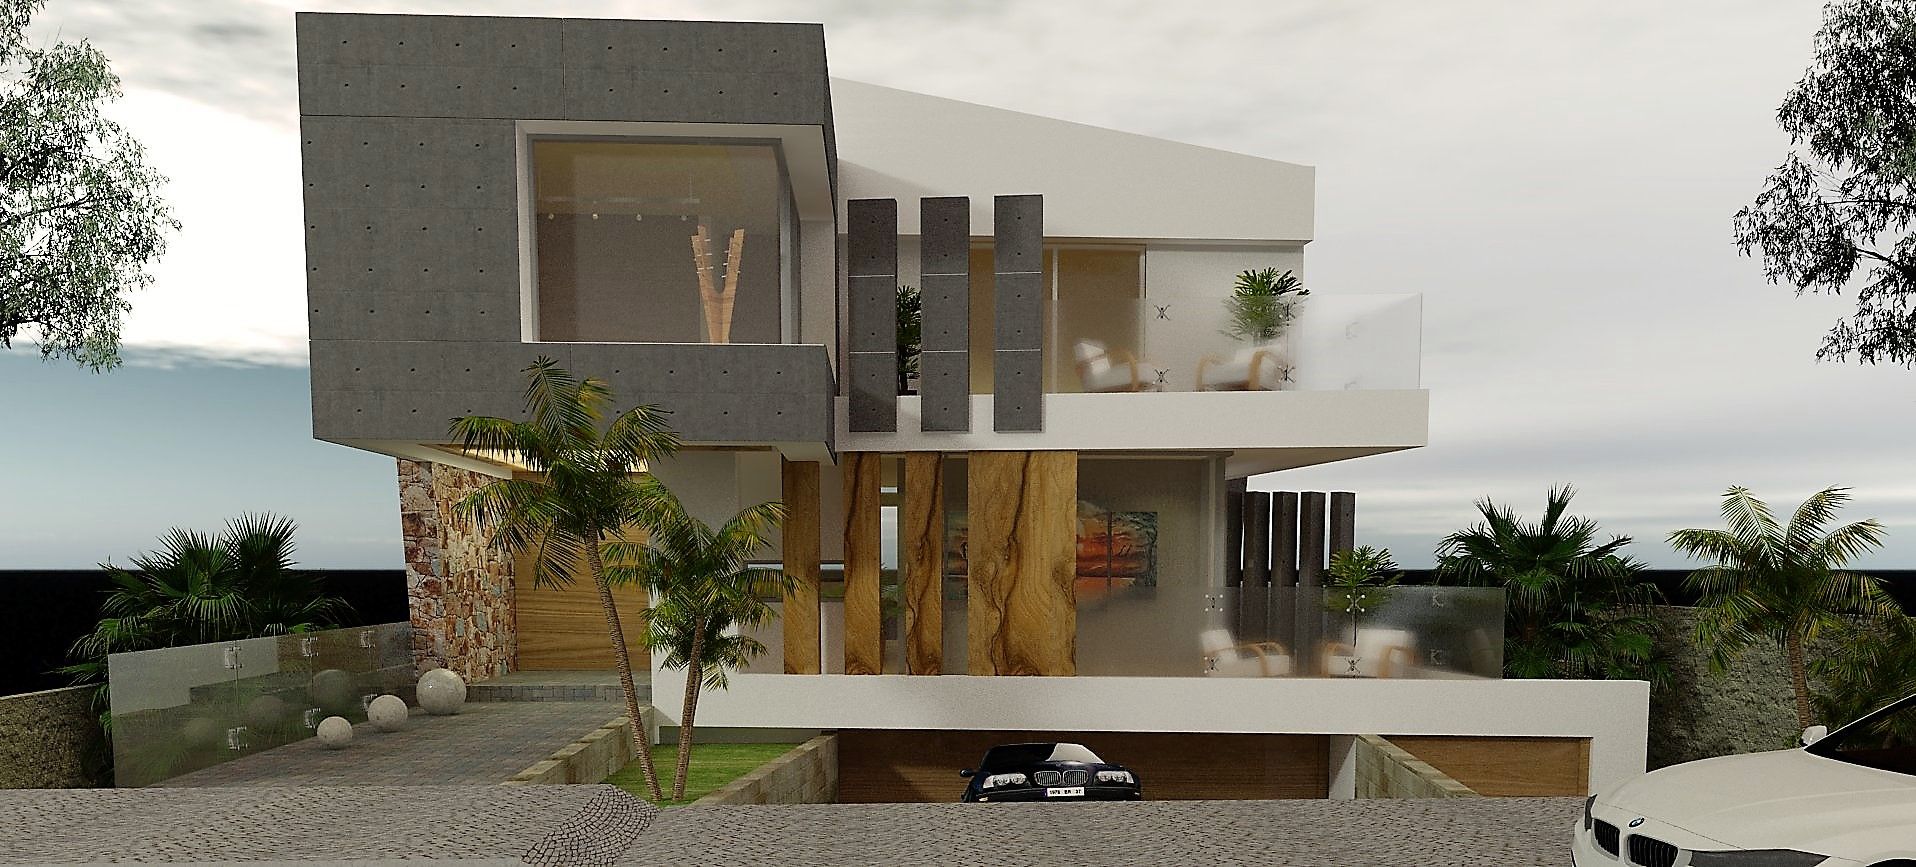 Estudio de Texturas - Visualización de proyecto CASTELLINO ARQUITECTOS (+) Casas modernas: Ideas, imágenes y decoración Hormigón fachada